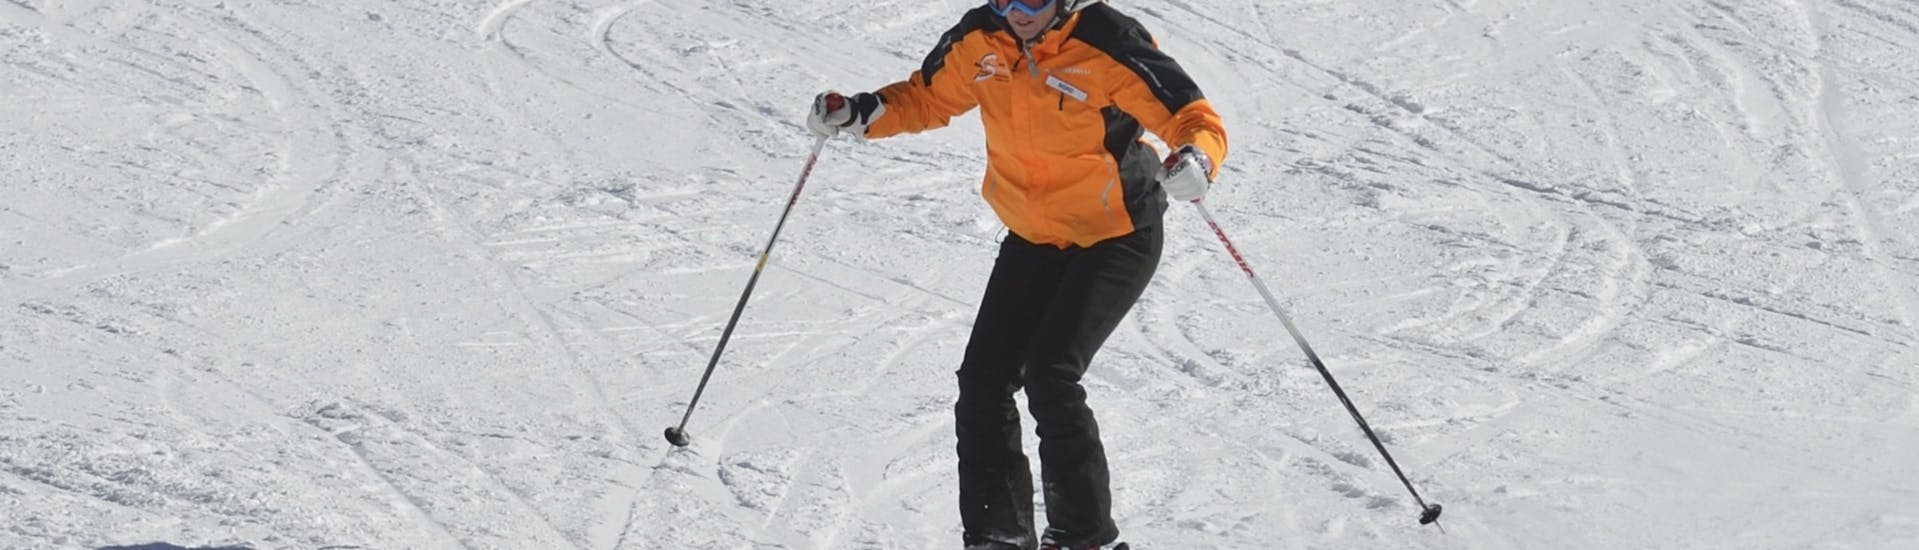 Lezioni private di sci per adulti a partire da 13 anni principianti assoluti.